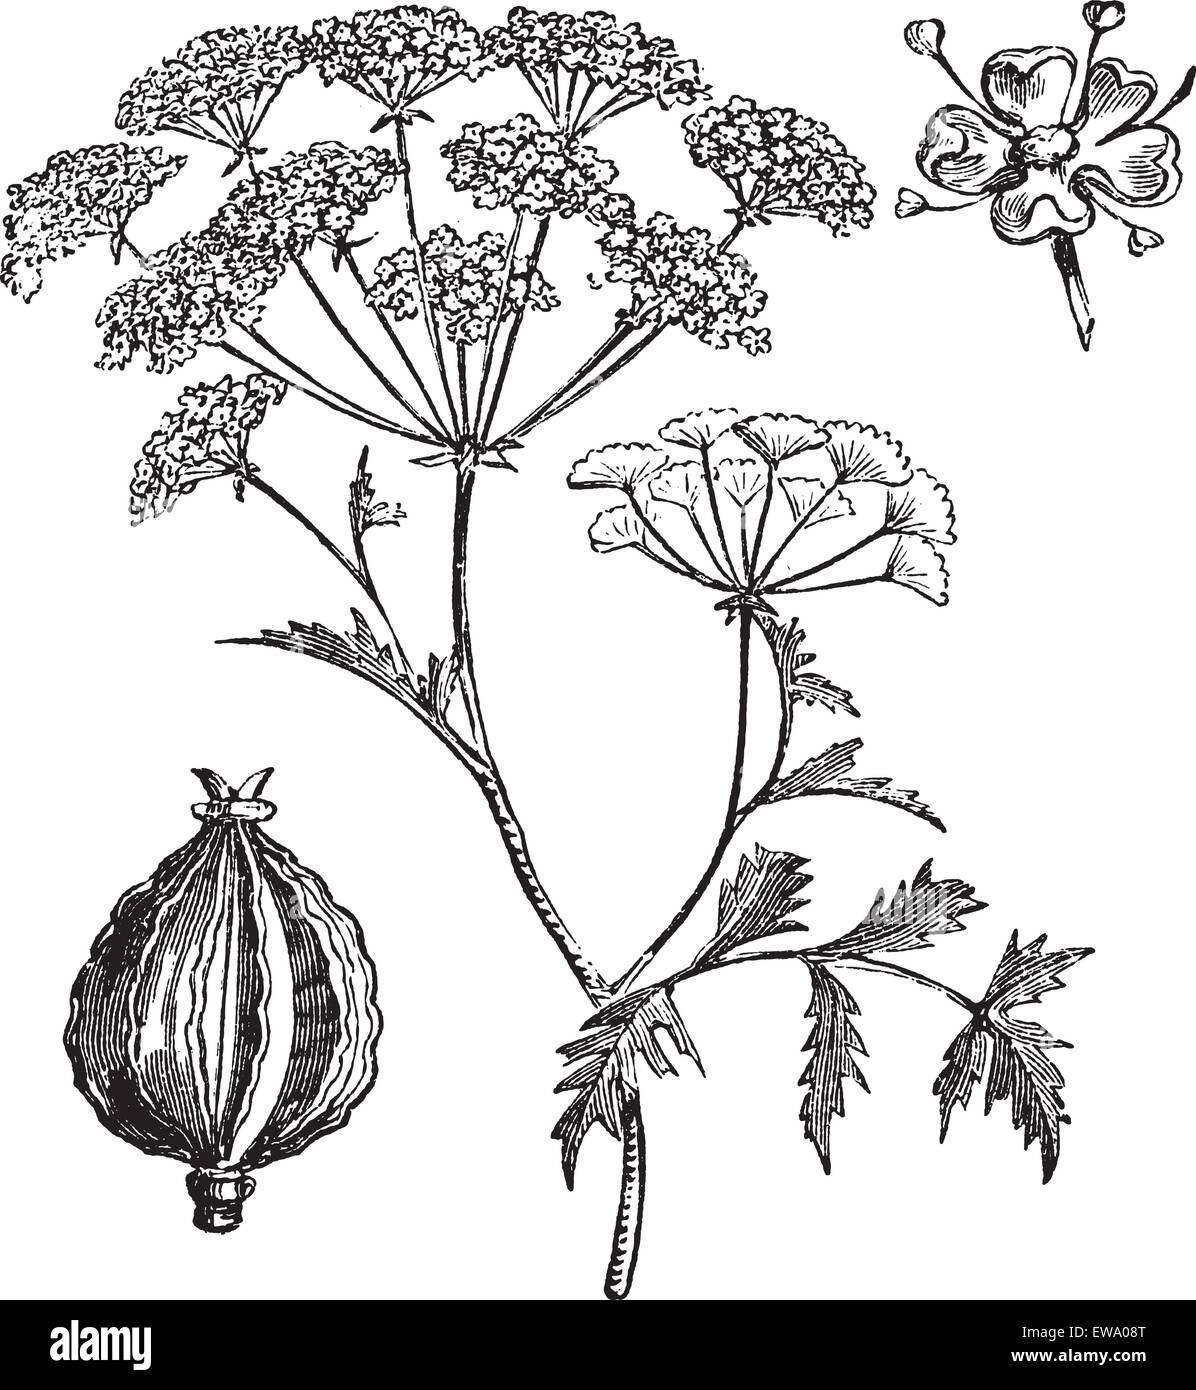 Hemlock or Poison Hemlock or Conium maculatum, vintage engraving. Old engraved illustration of Hemlock. Stock Vector